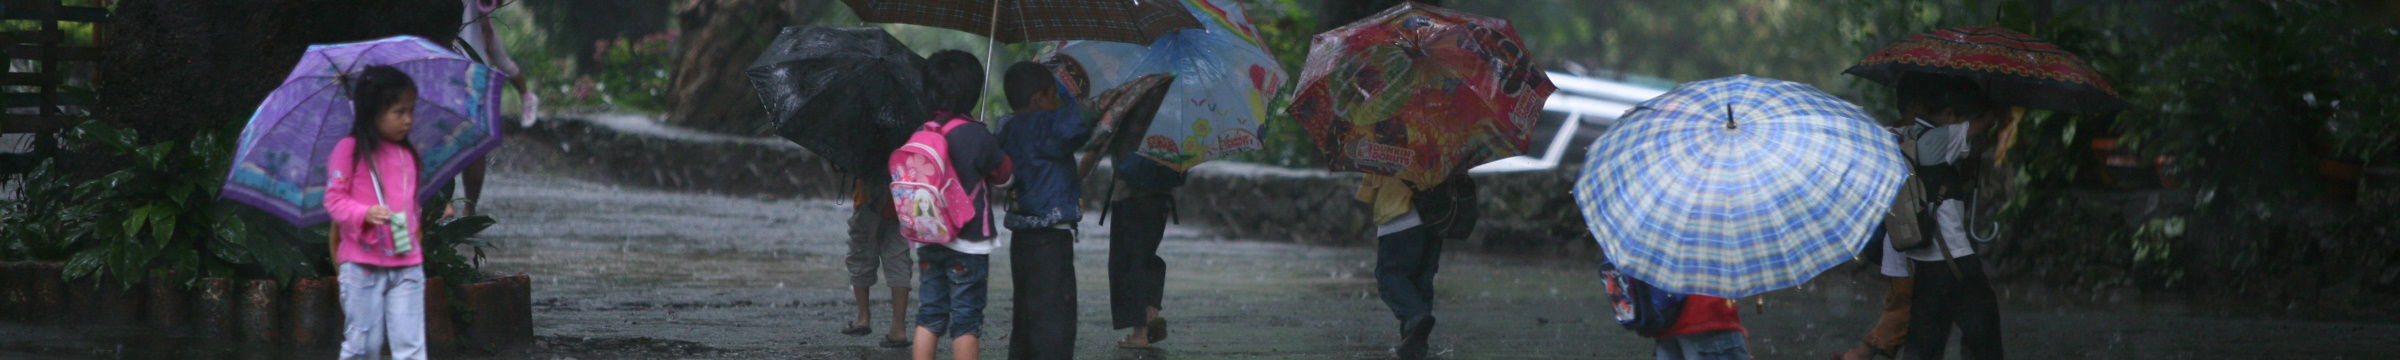 enfants parapluies